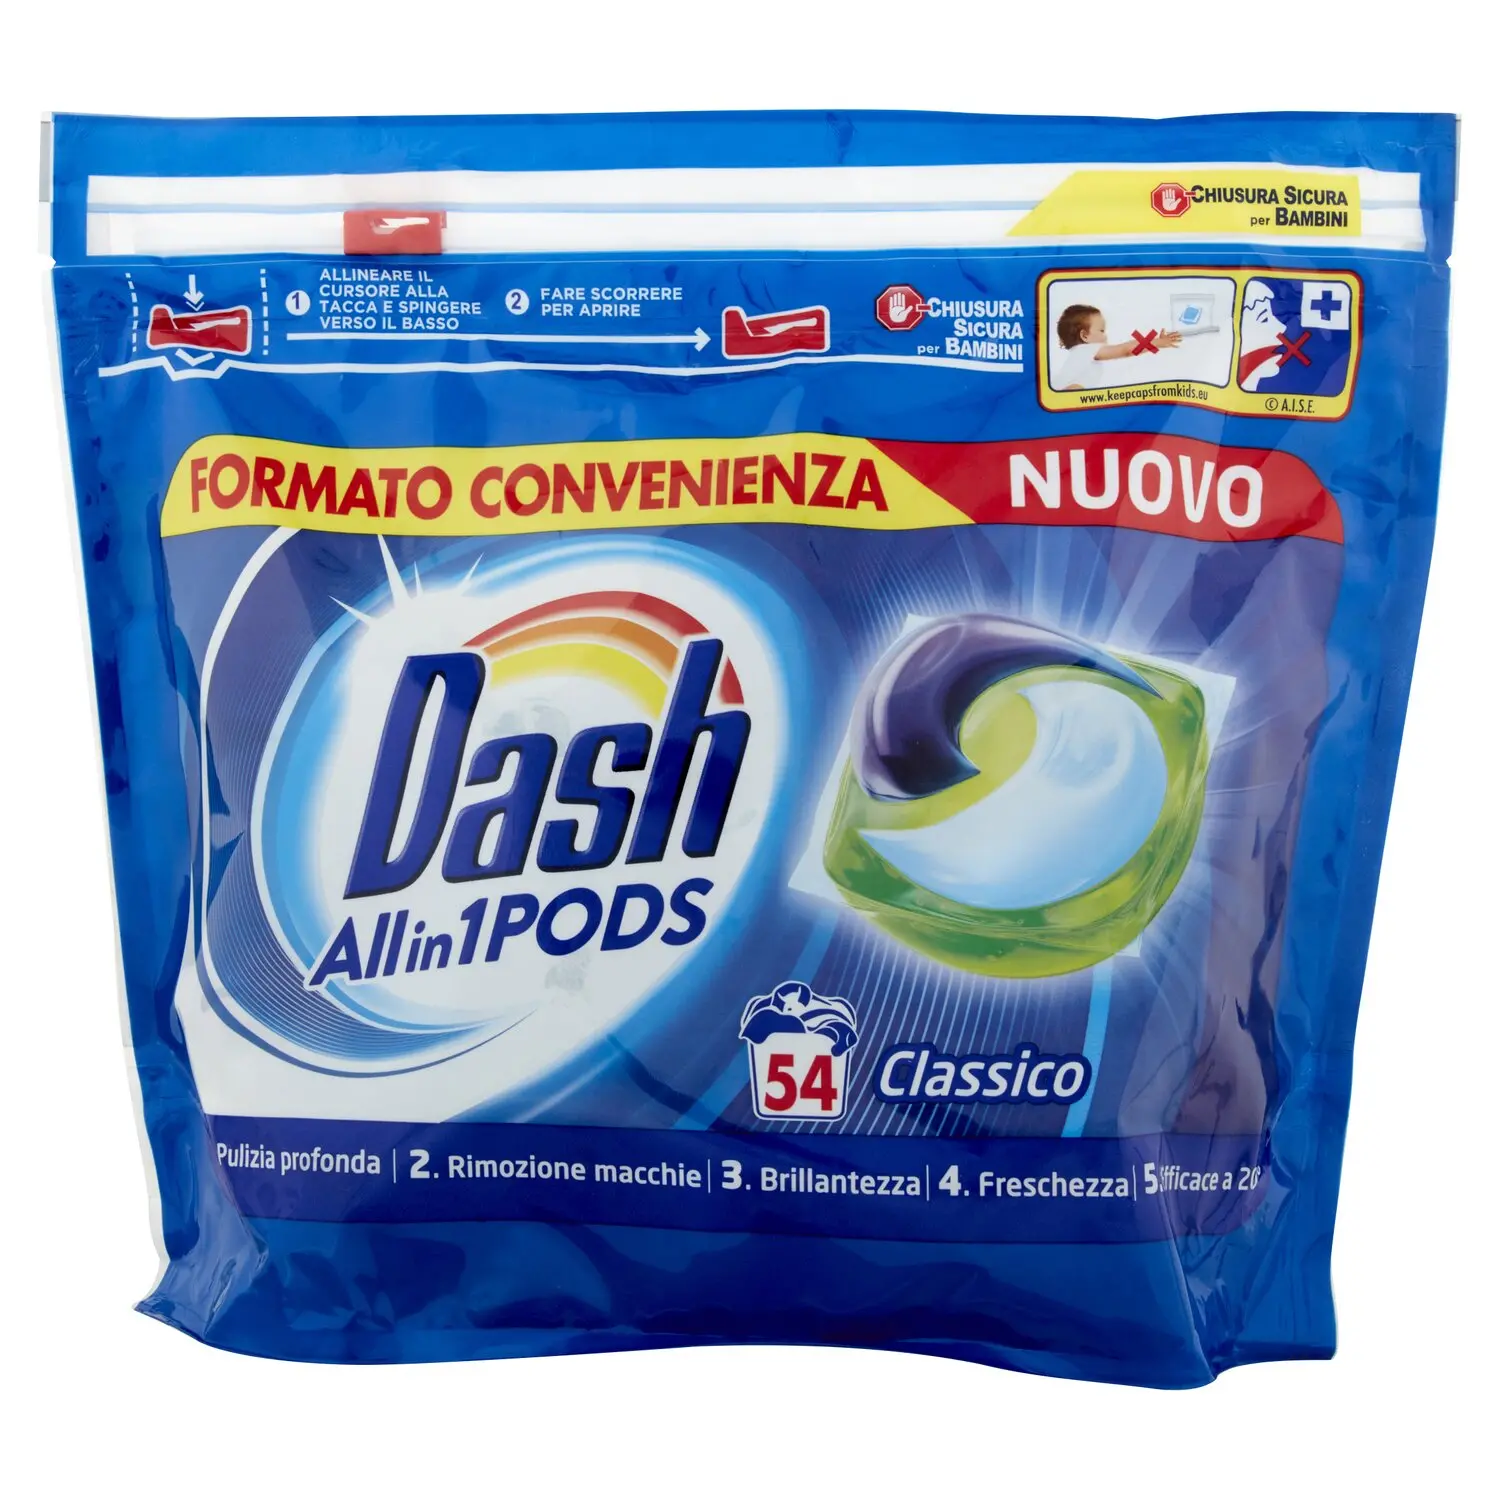 Dash Allin1 Pods